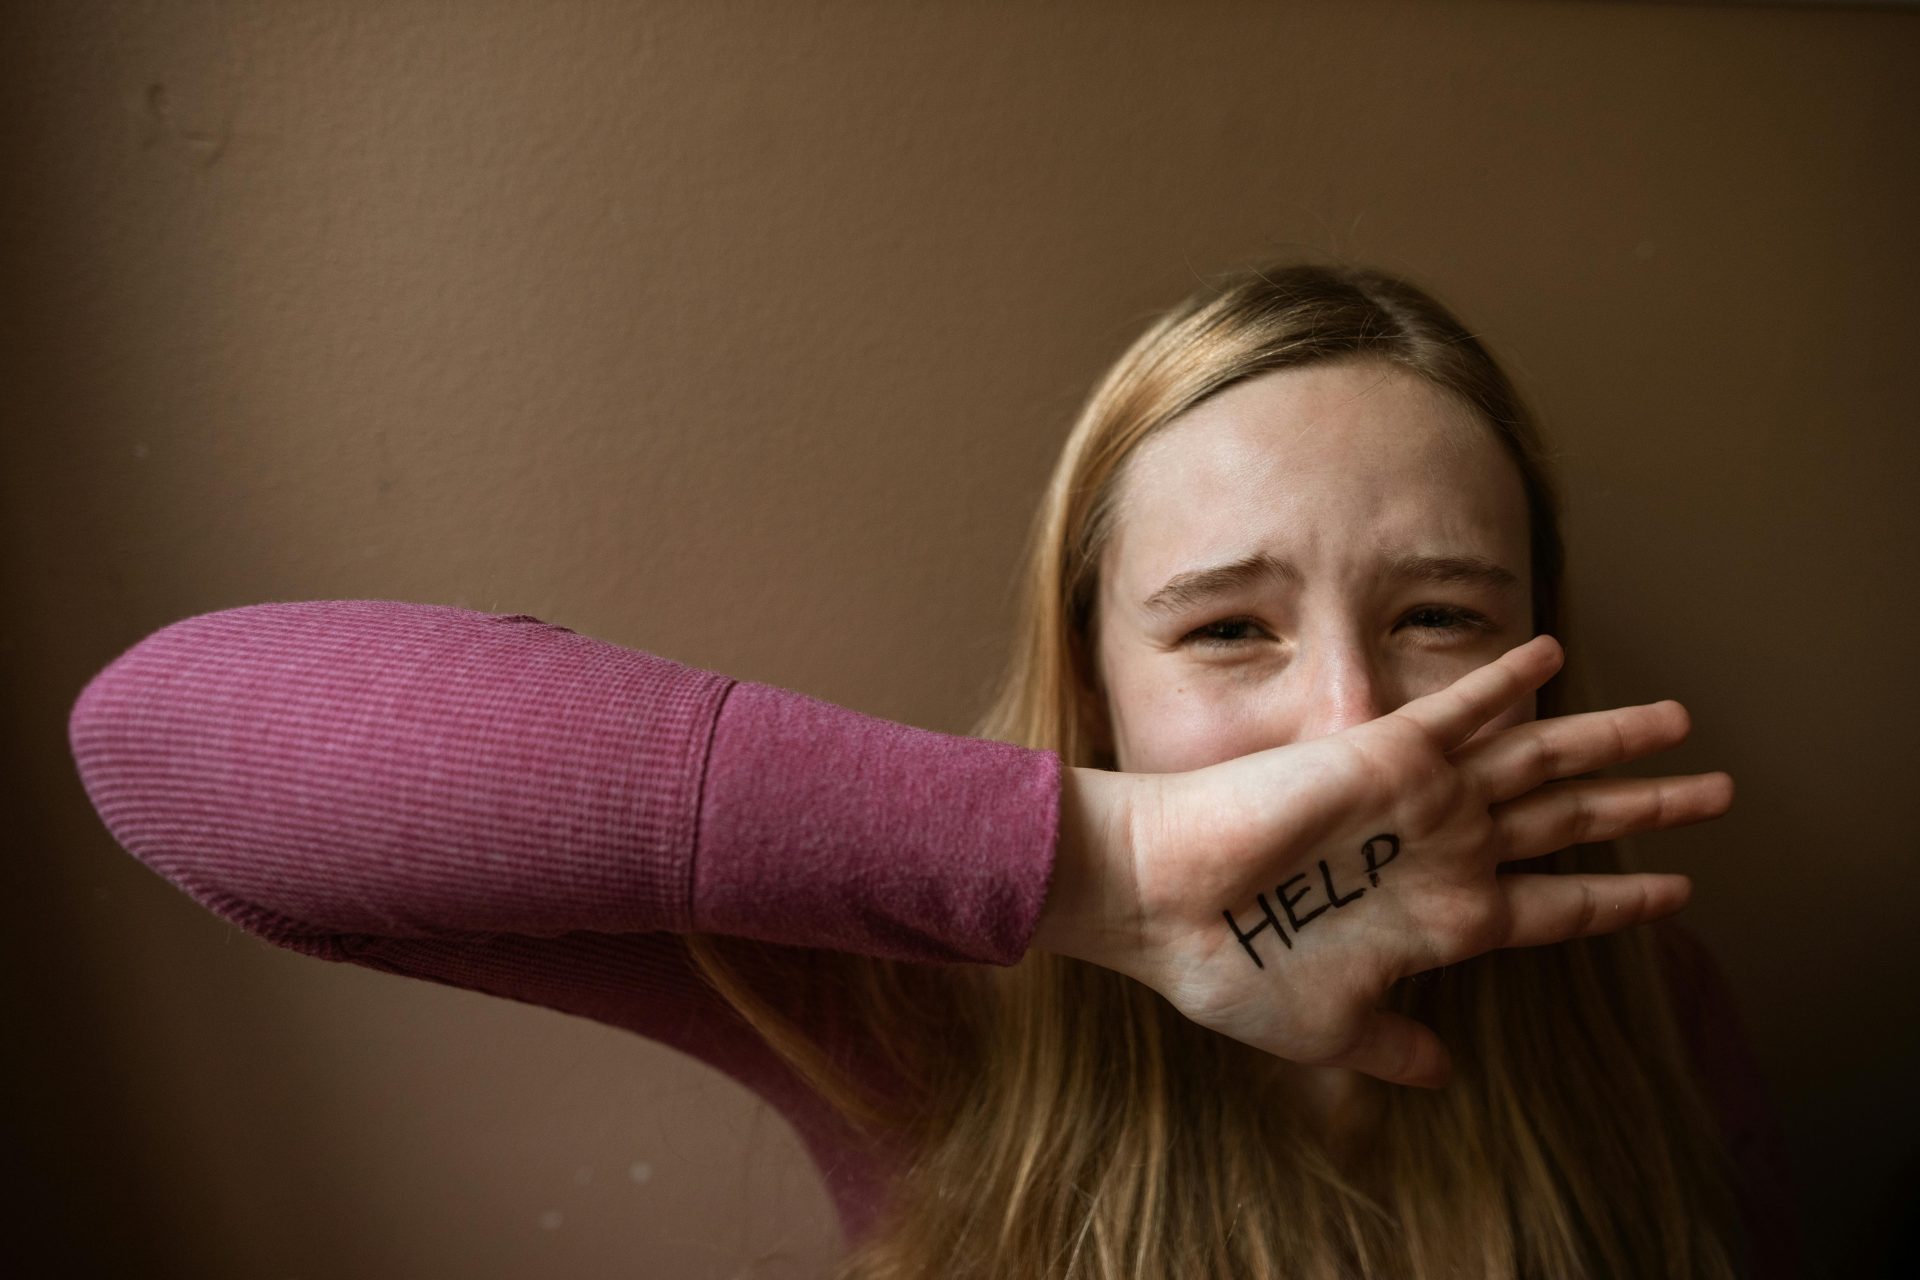 "Чтобы не переживать снова": в Австралии изменят формат дачи показаний для жертв насилия